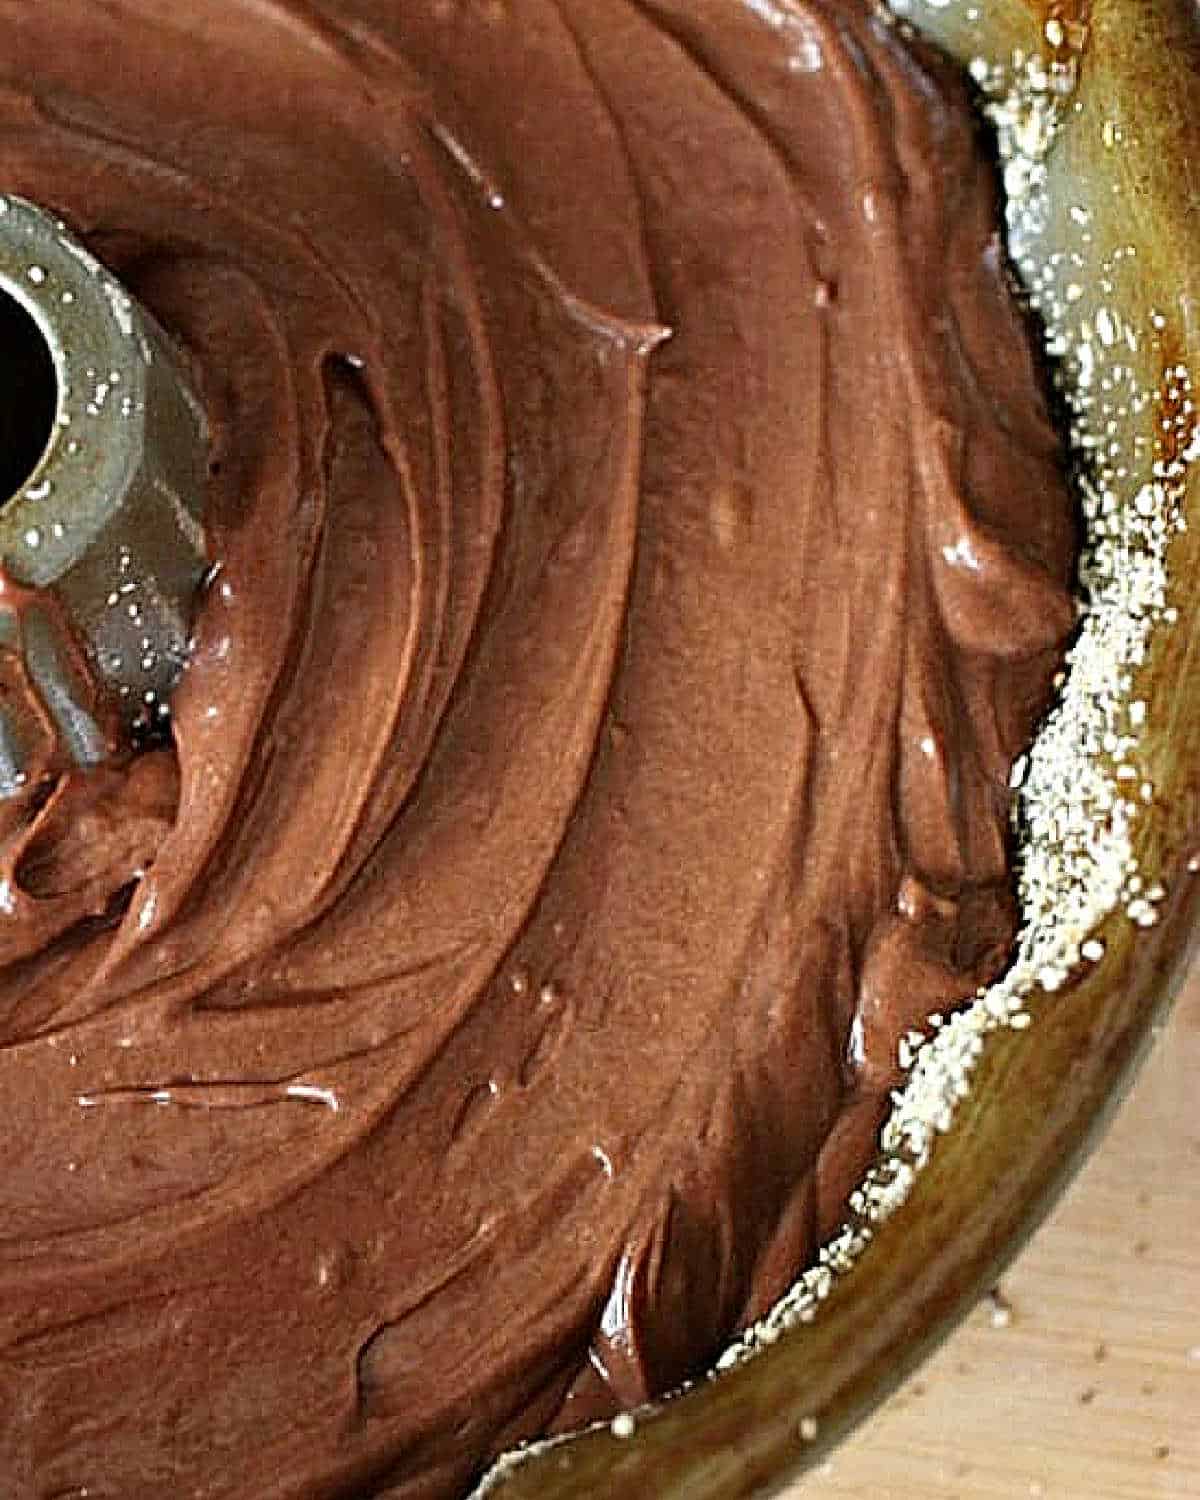 Metal bundt pan with chocolate cake batter. Close up.